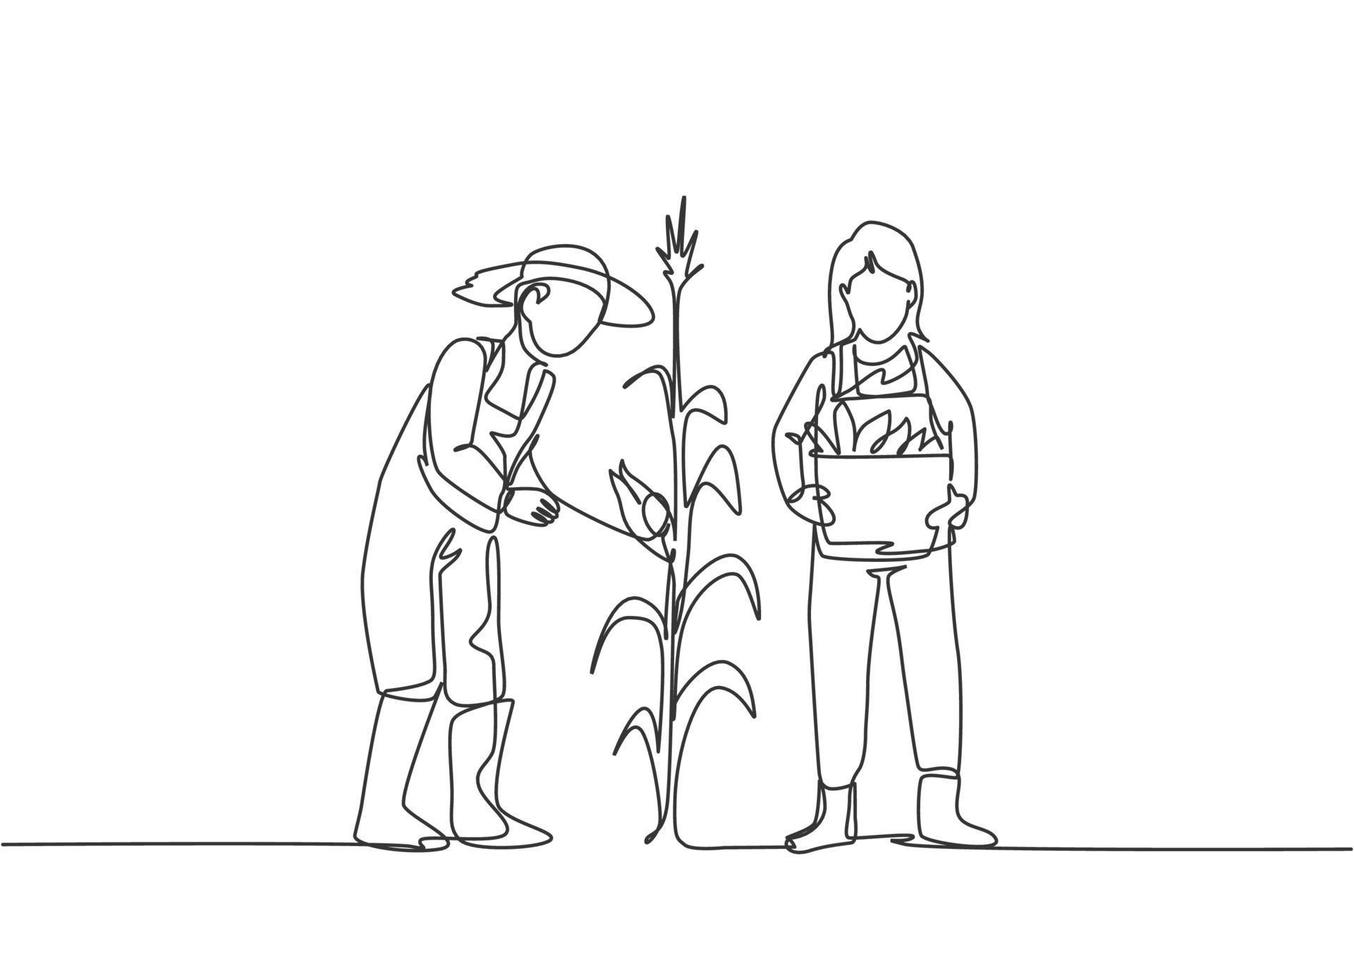 dibujo de una sola línea de un joven agricultor recogiendo el maíz en el árbol y trayendo una canasta. concepto minimalista de desafío agrícola. Ilustración de vector gráfico de diseño de dibujo de línea continua moderna.